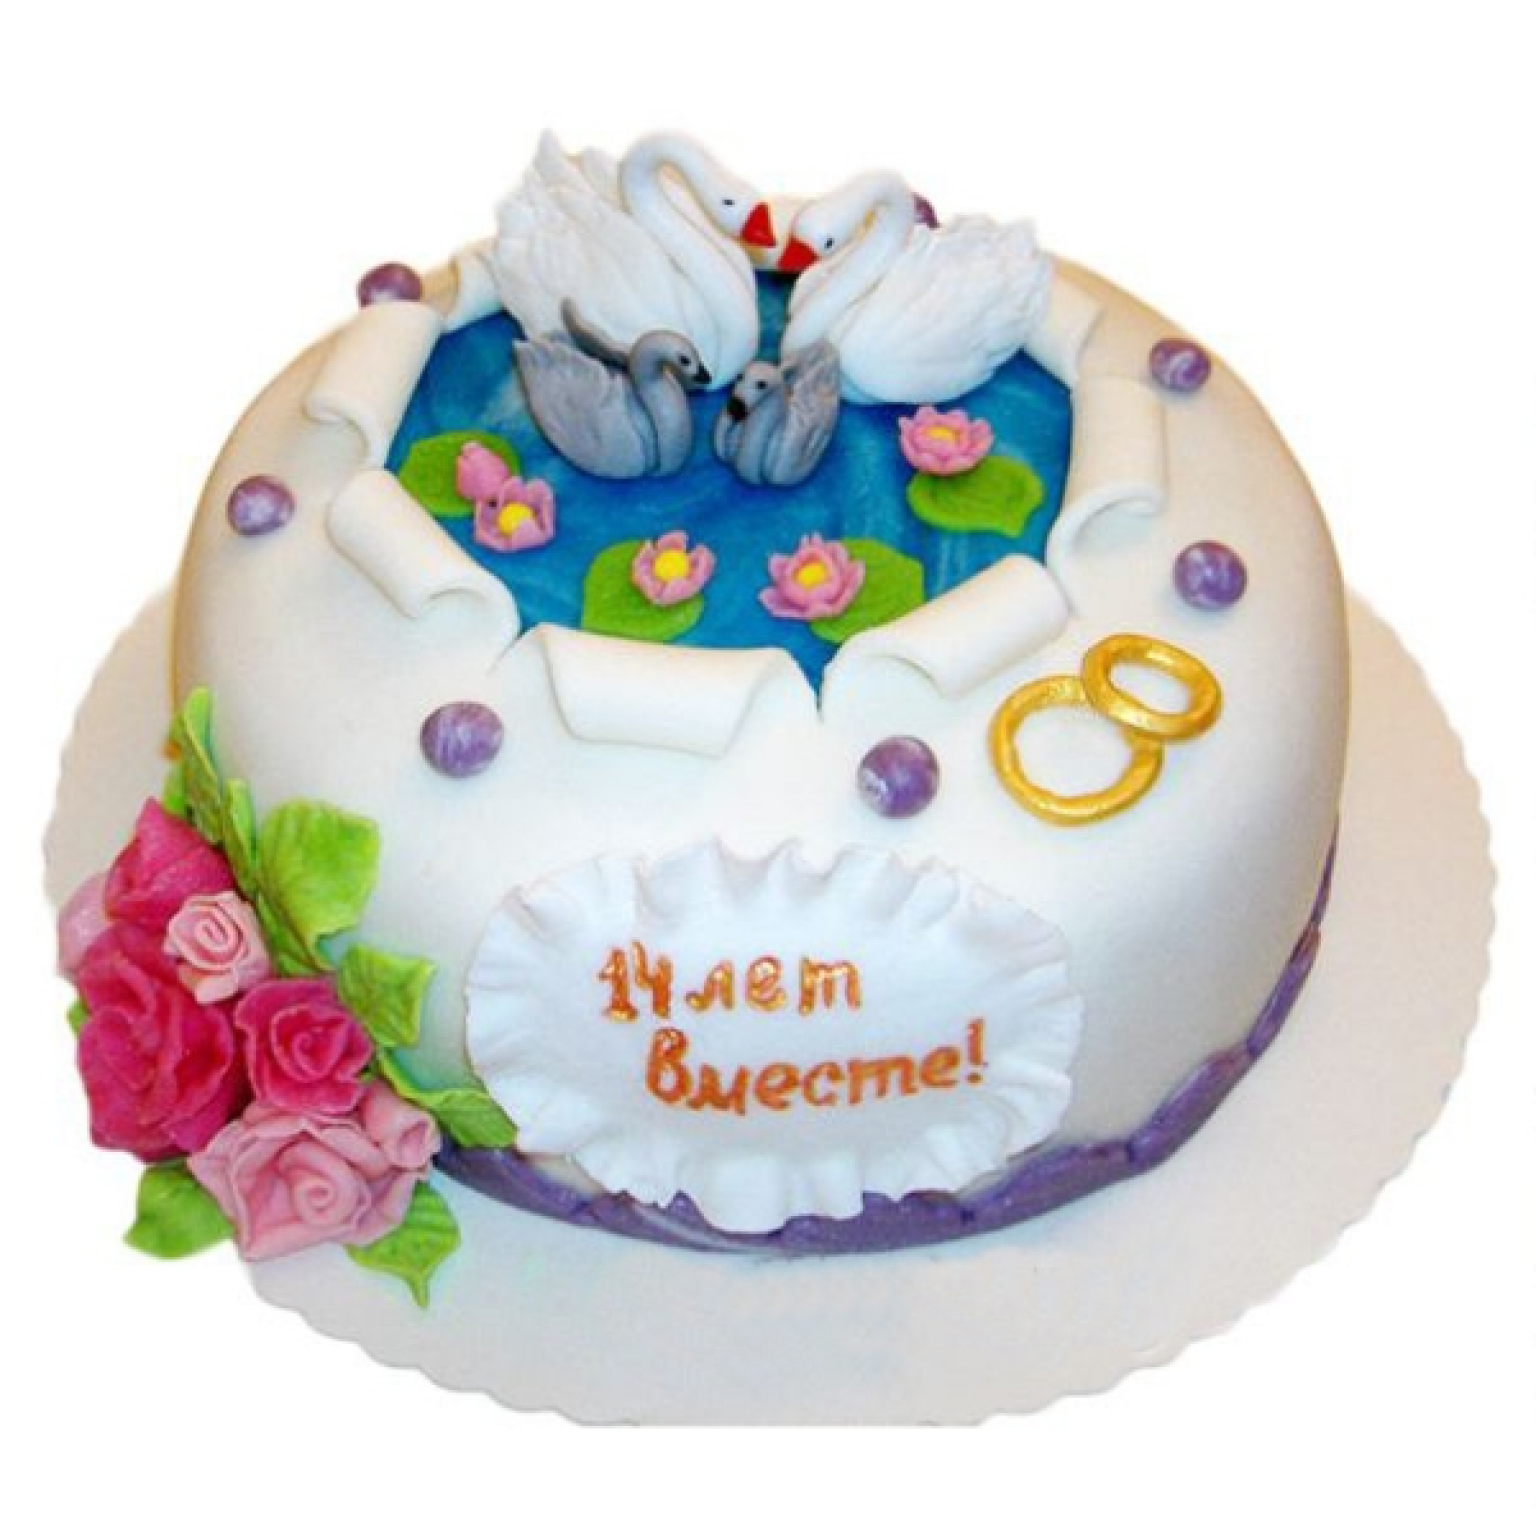 14 Лет свадьбы. Торт на годовщину. Торт на 14 лет свадьбы. Торт натгодовщину свадьбы.